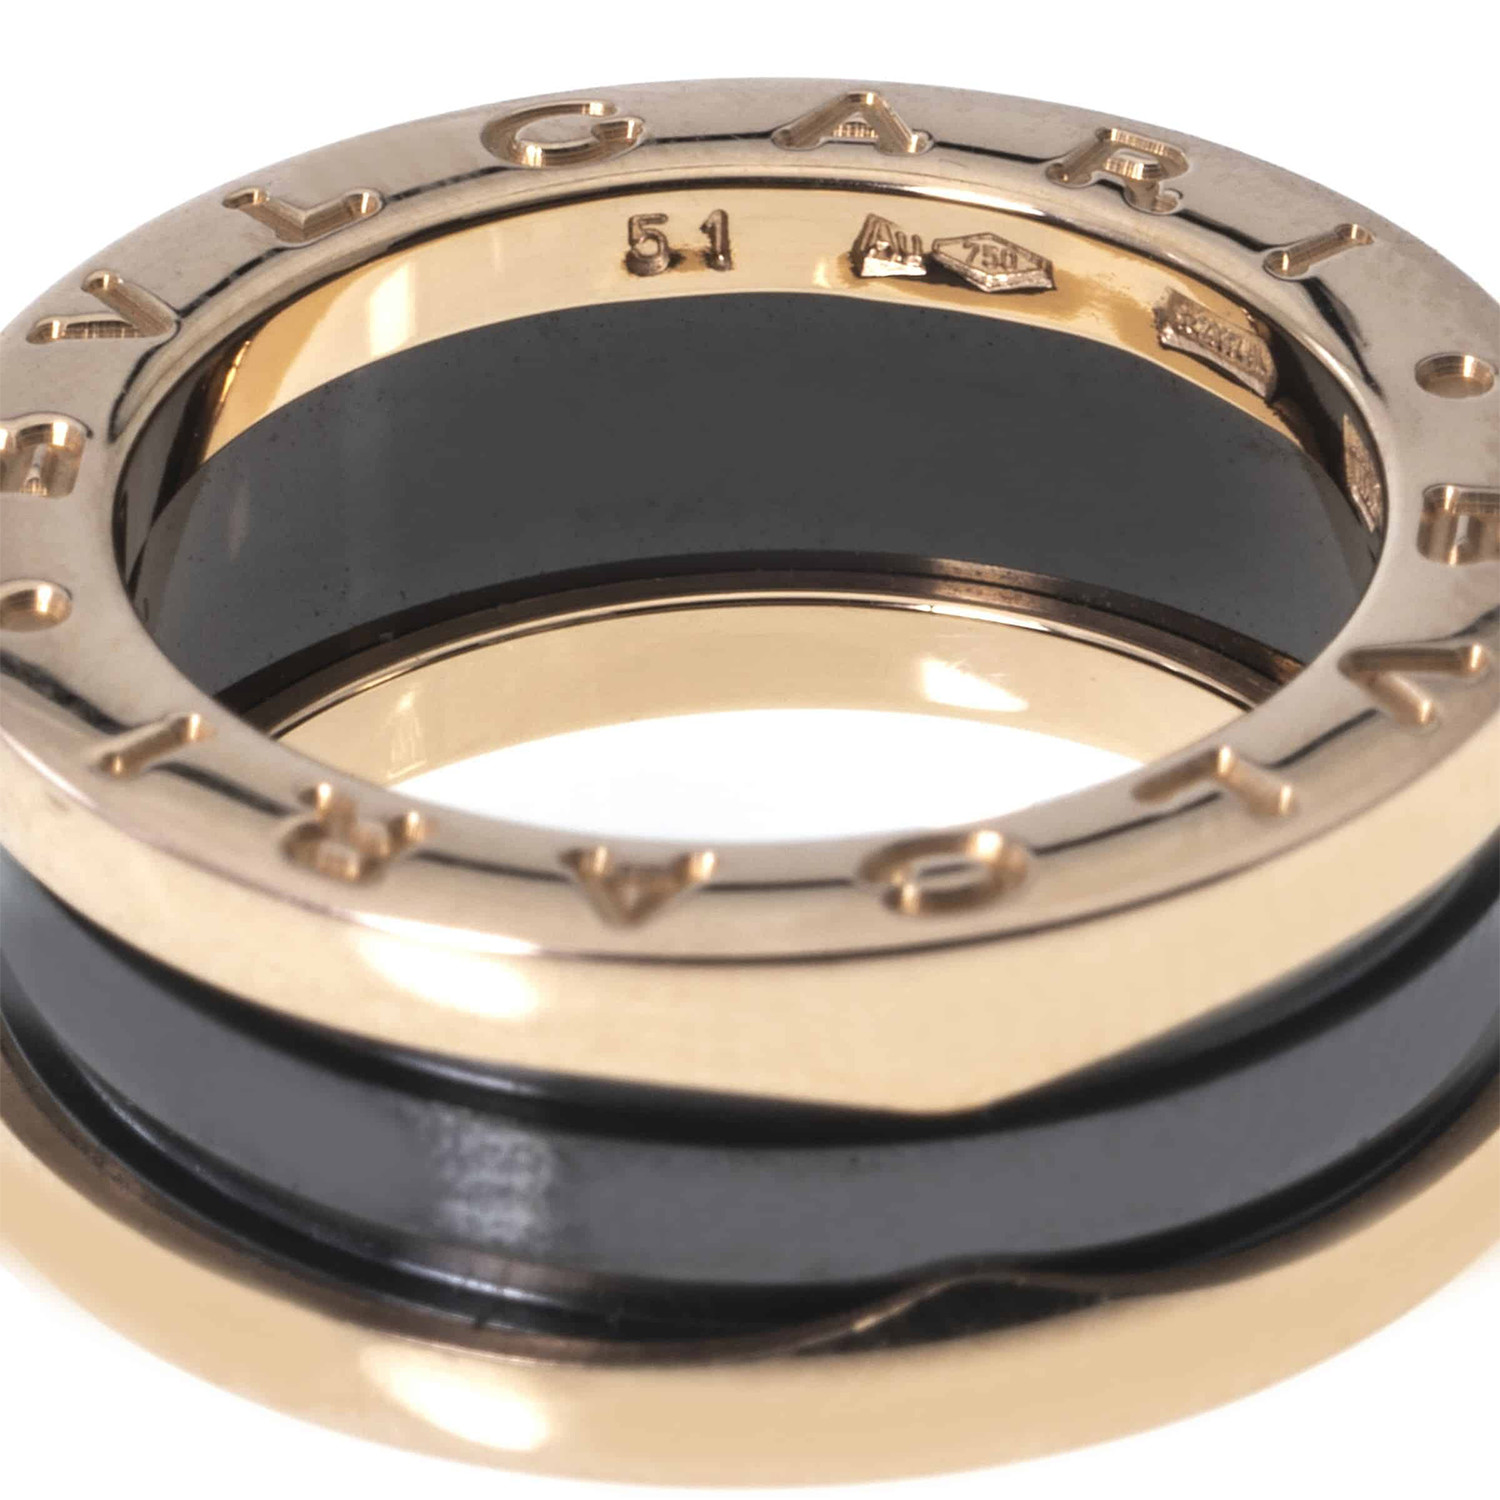 Bulgari 18k Rose Gold B Zero Black Ceramic Ring // Ring Size 5.5